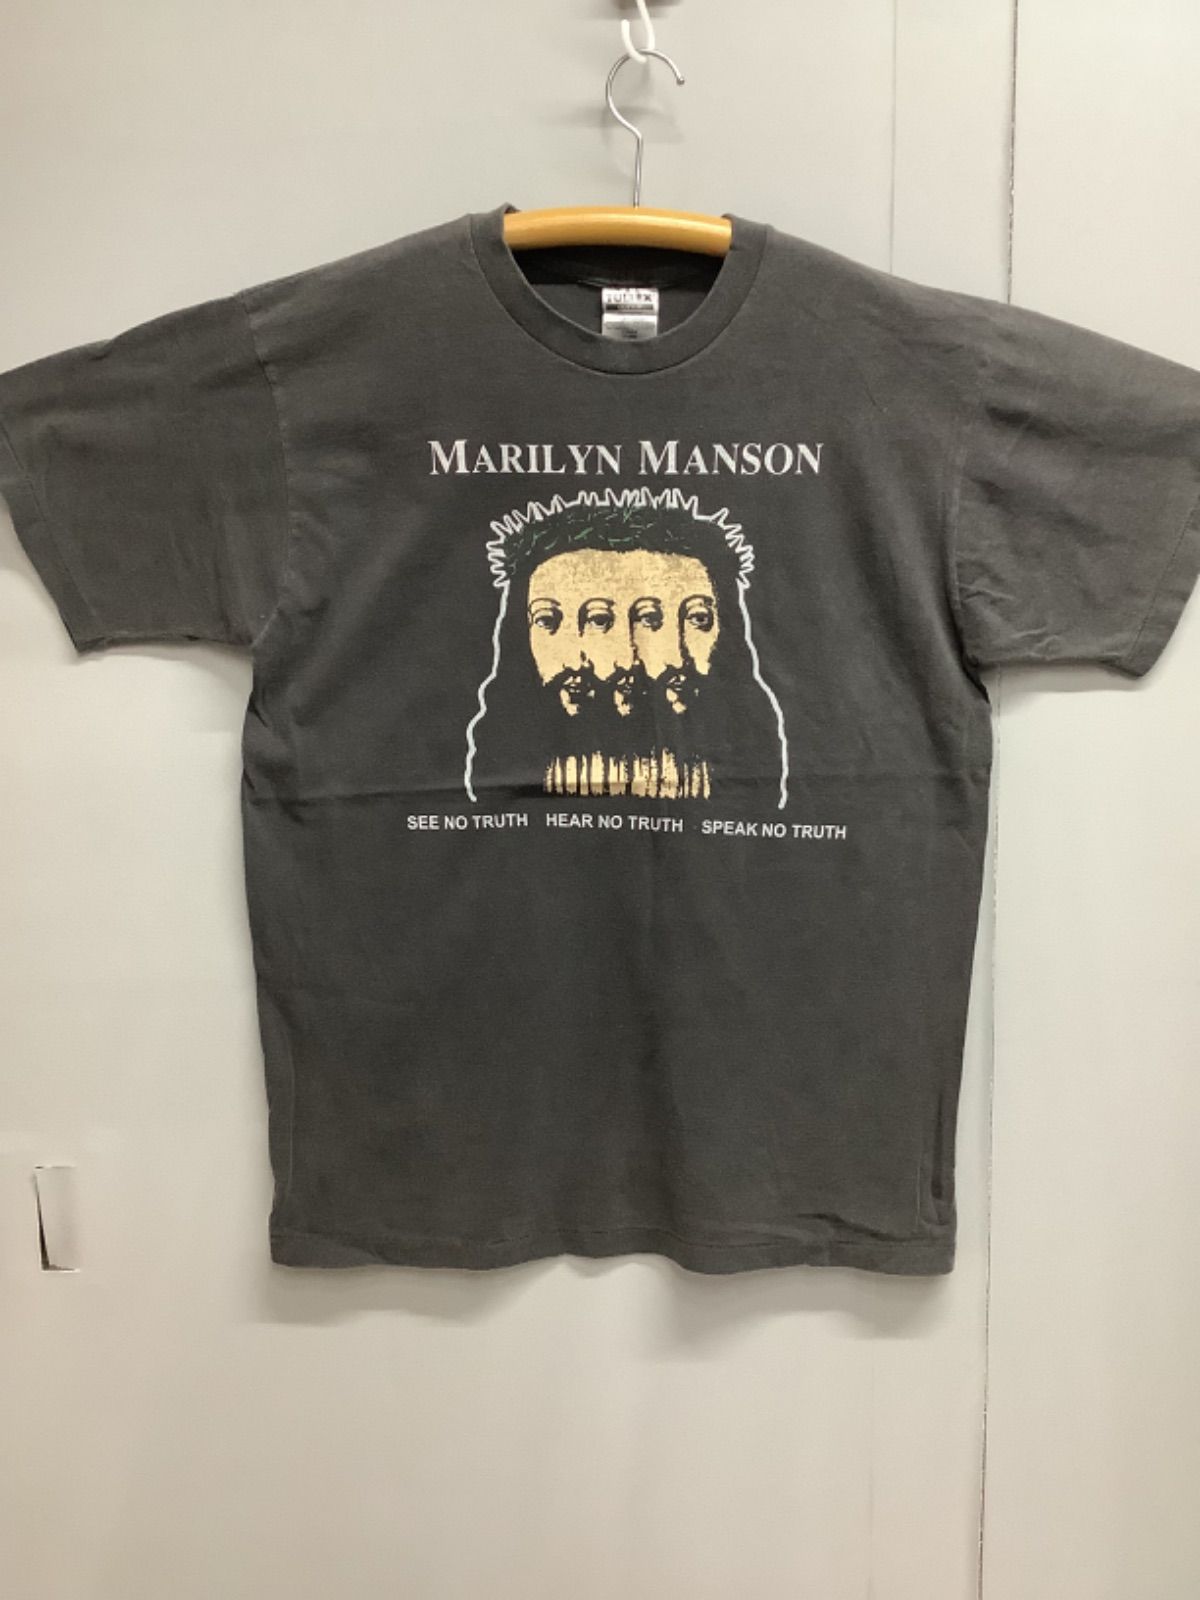 選ぶなら 【XL】マリリン・マンソンMARILYN MANSON BELIEVE Tシャツ 